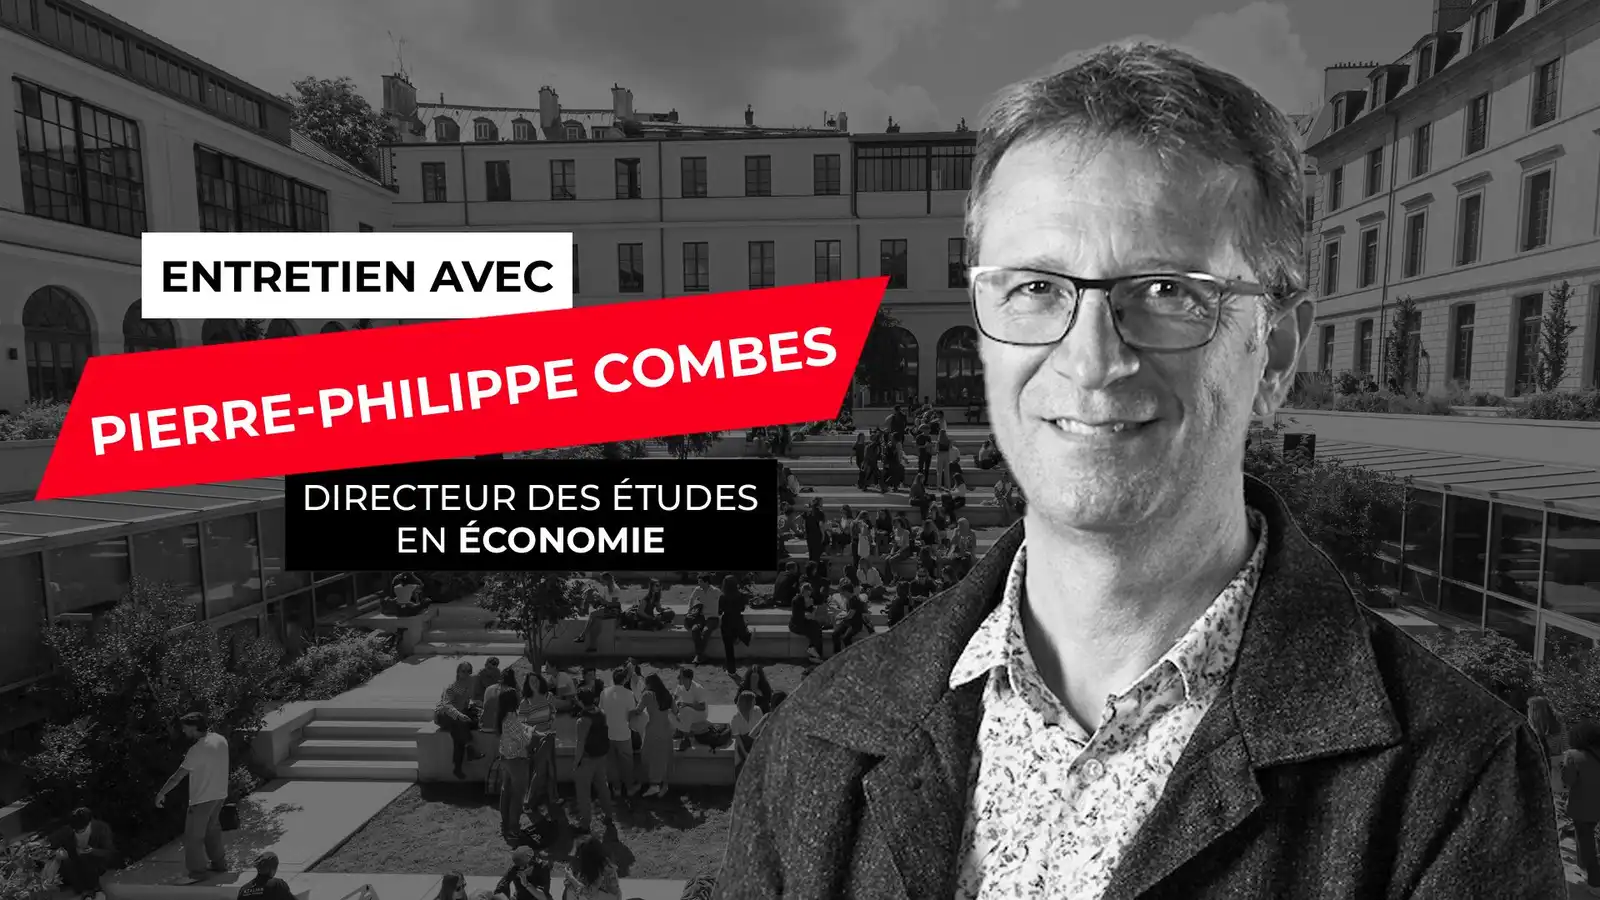 Entretien avec Pierre-Philippe COMBES, directeur des études en économie